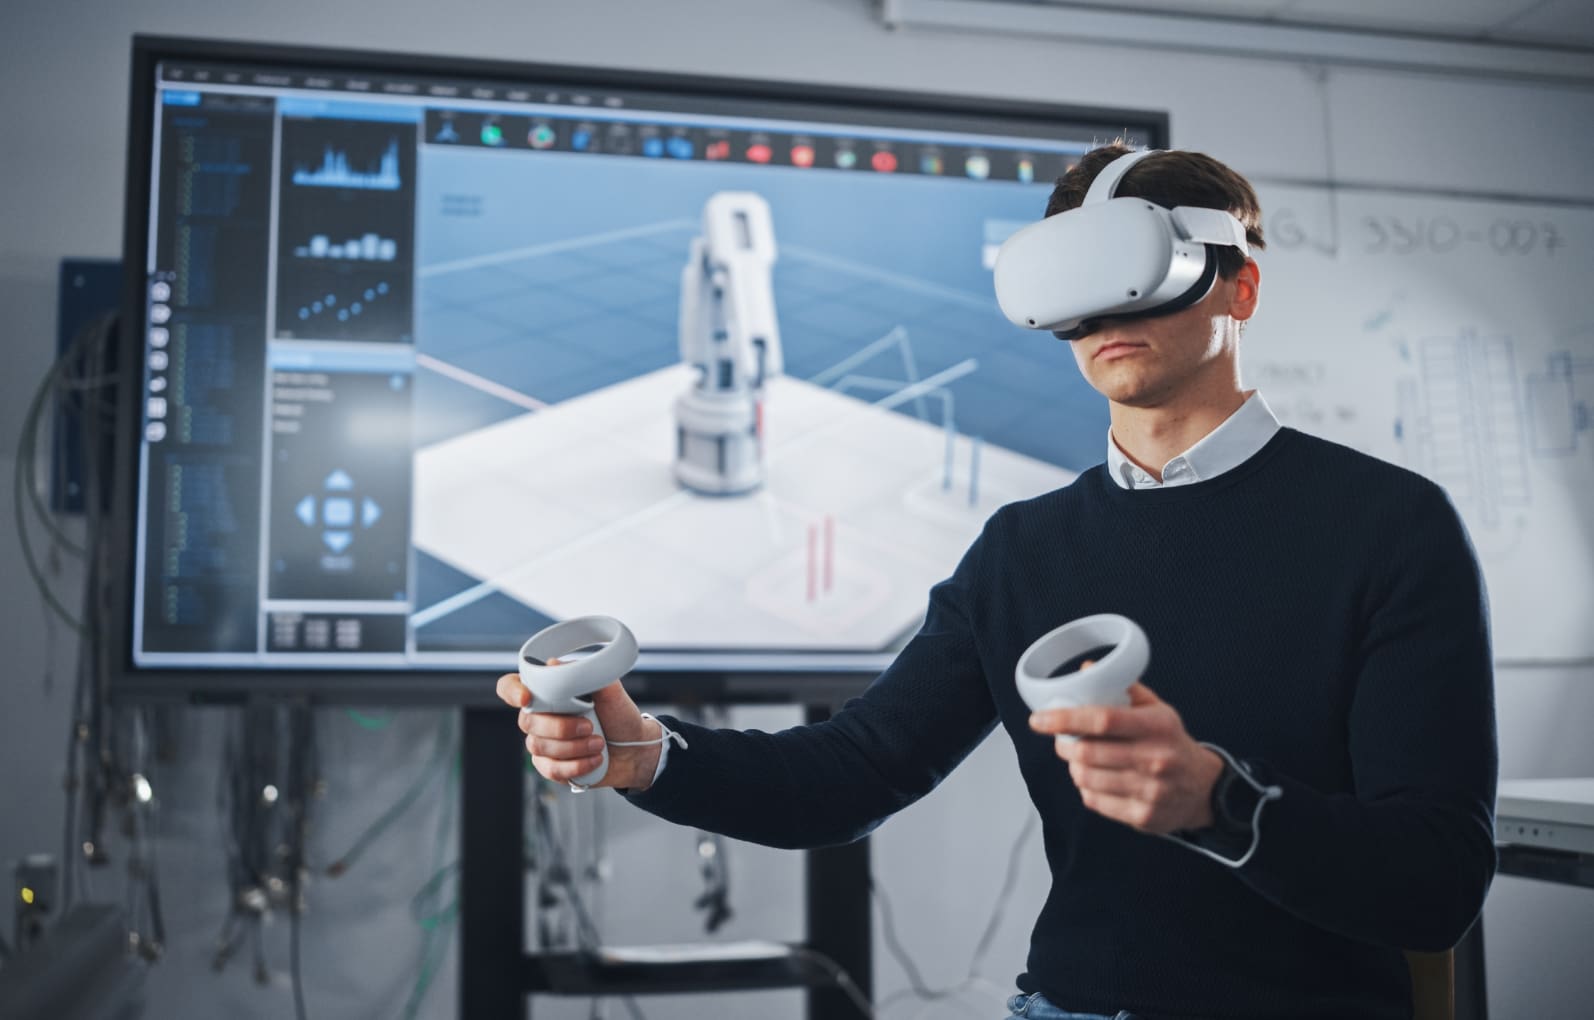 Ein Ingenieur in einem Techniklabor trägt ein XR-Headset und verwendet Controller, um eine virtuelle Darstellung eines Roboters zu manipulieren, was die Anwendung von Extended Reality für Design und Simulation zeigt.